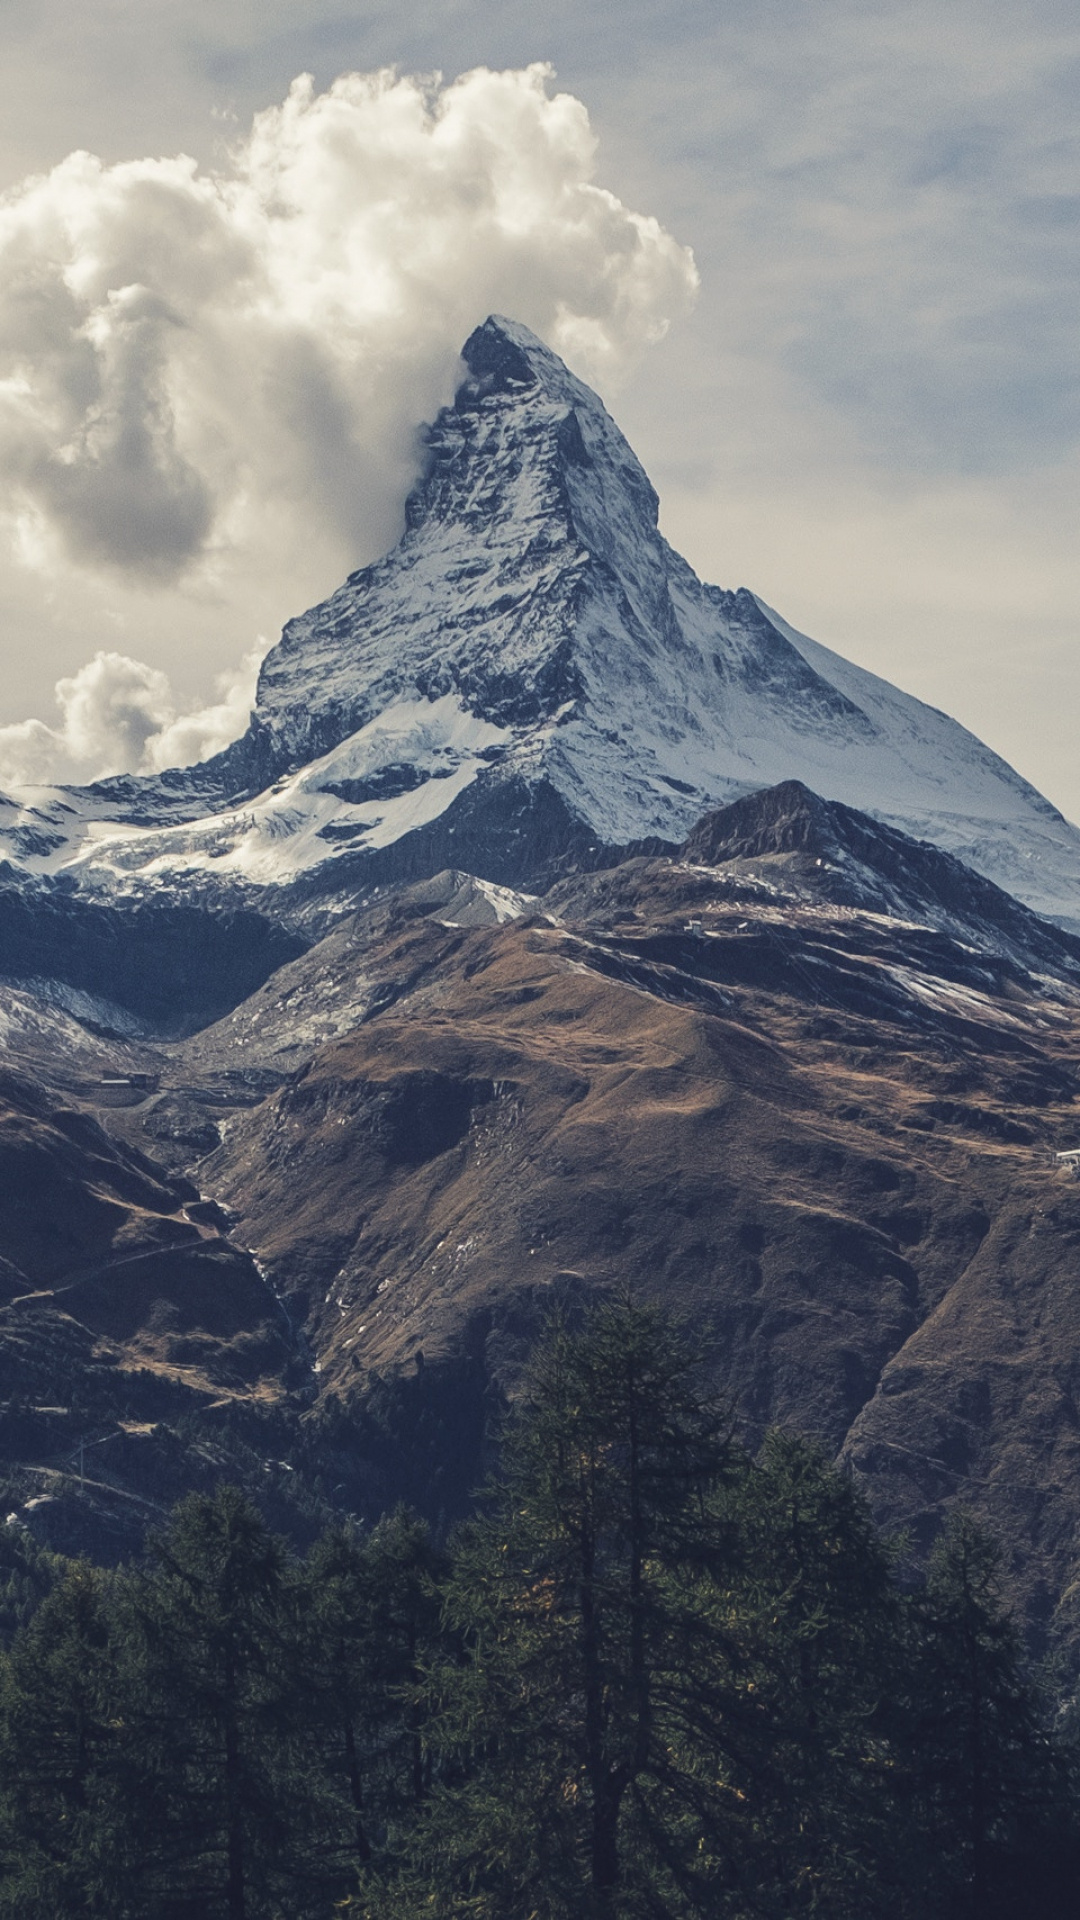 Matterhorn under clouds, iPhone wallpaper, iDrop News, 1080x1920 Full HD Phone